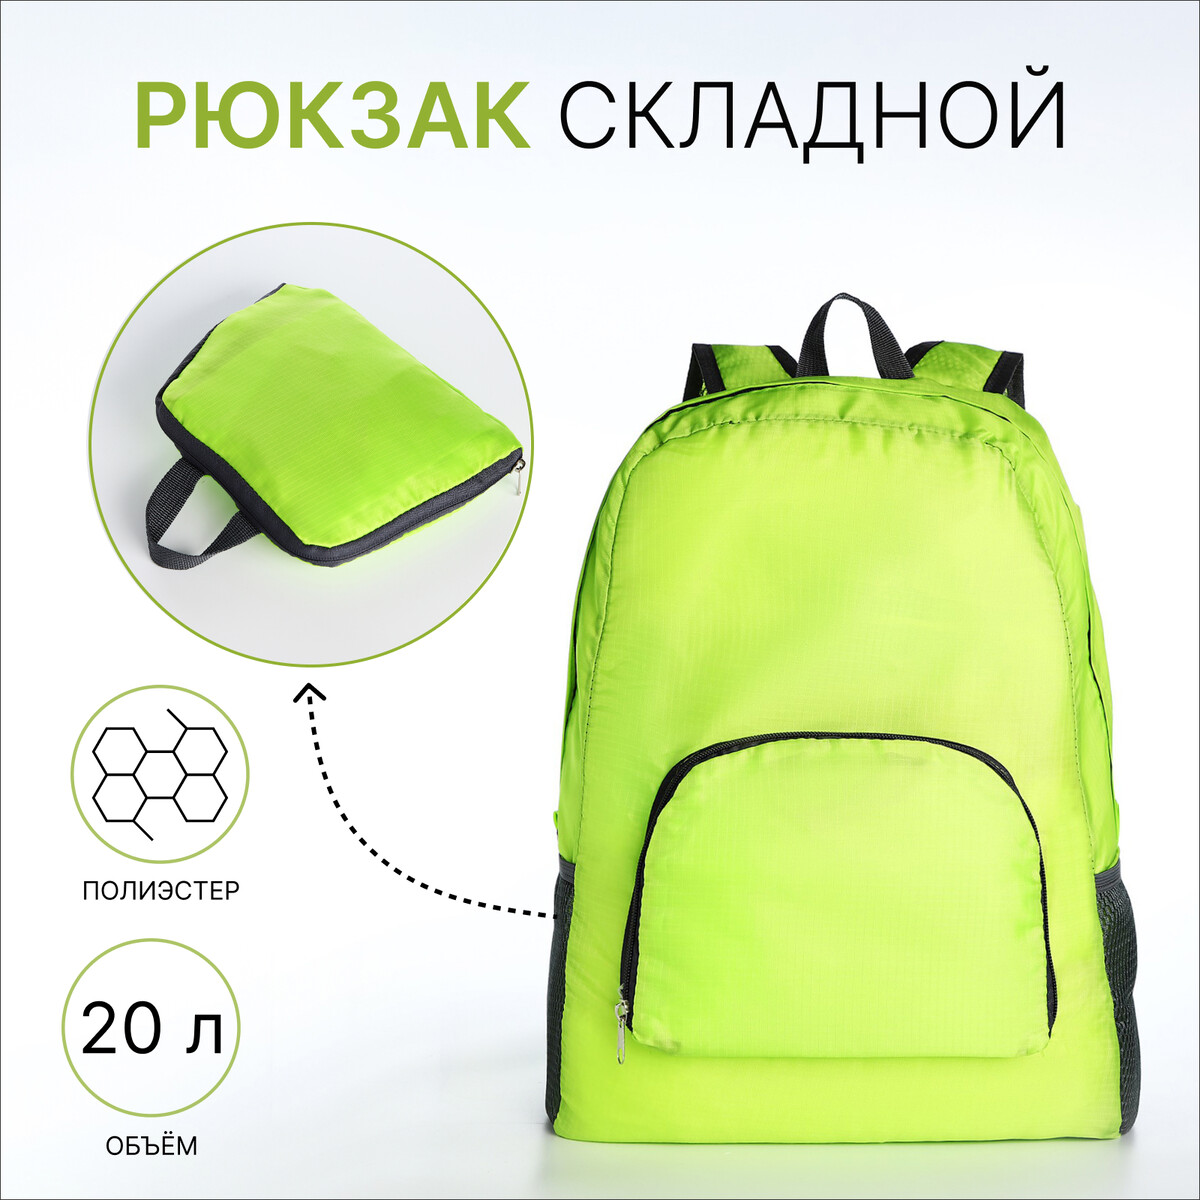 Рюкзак складной, отдел на молнии, наружный карман, 2 боковых кармана, цвет зеленый нож складной туристический firebird f753m1 gr зеленый